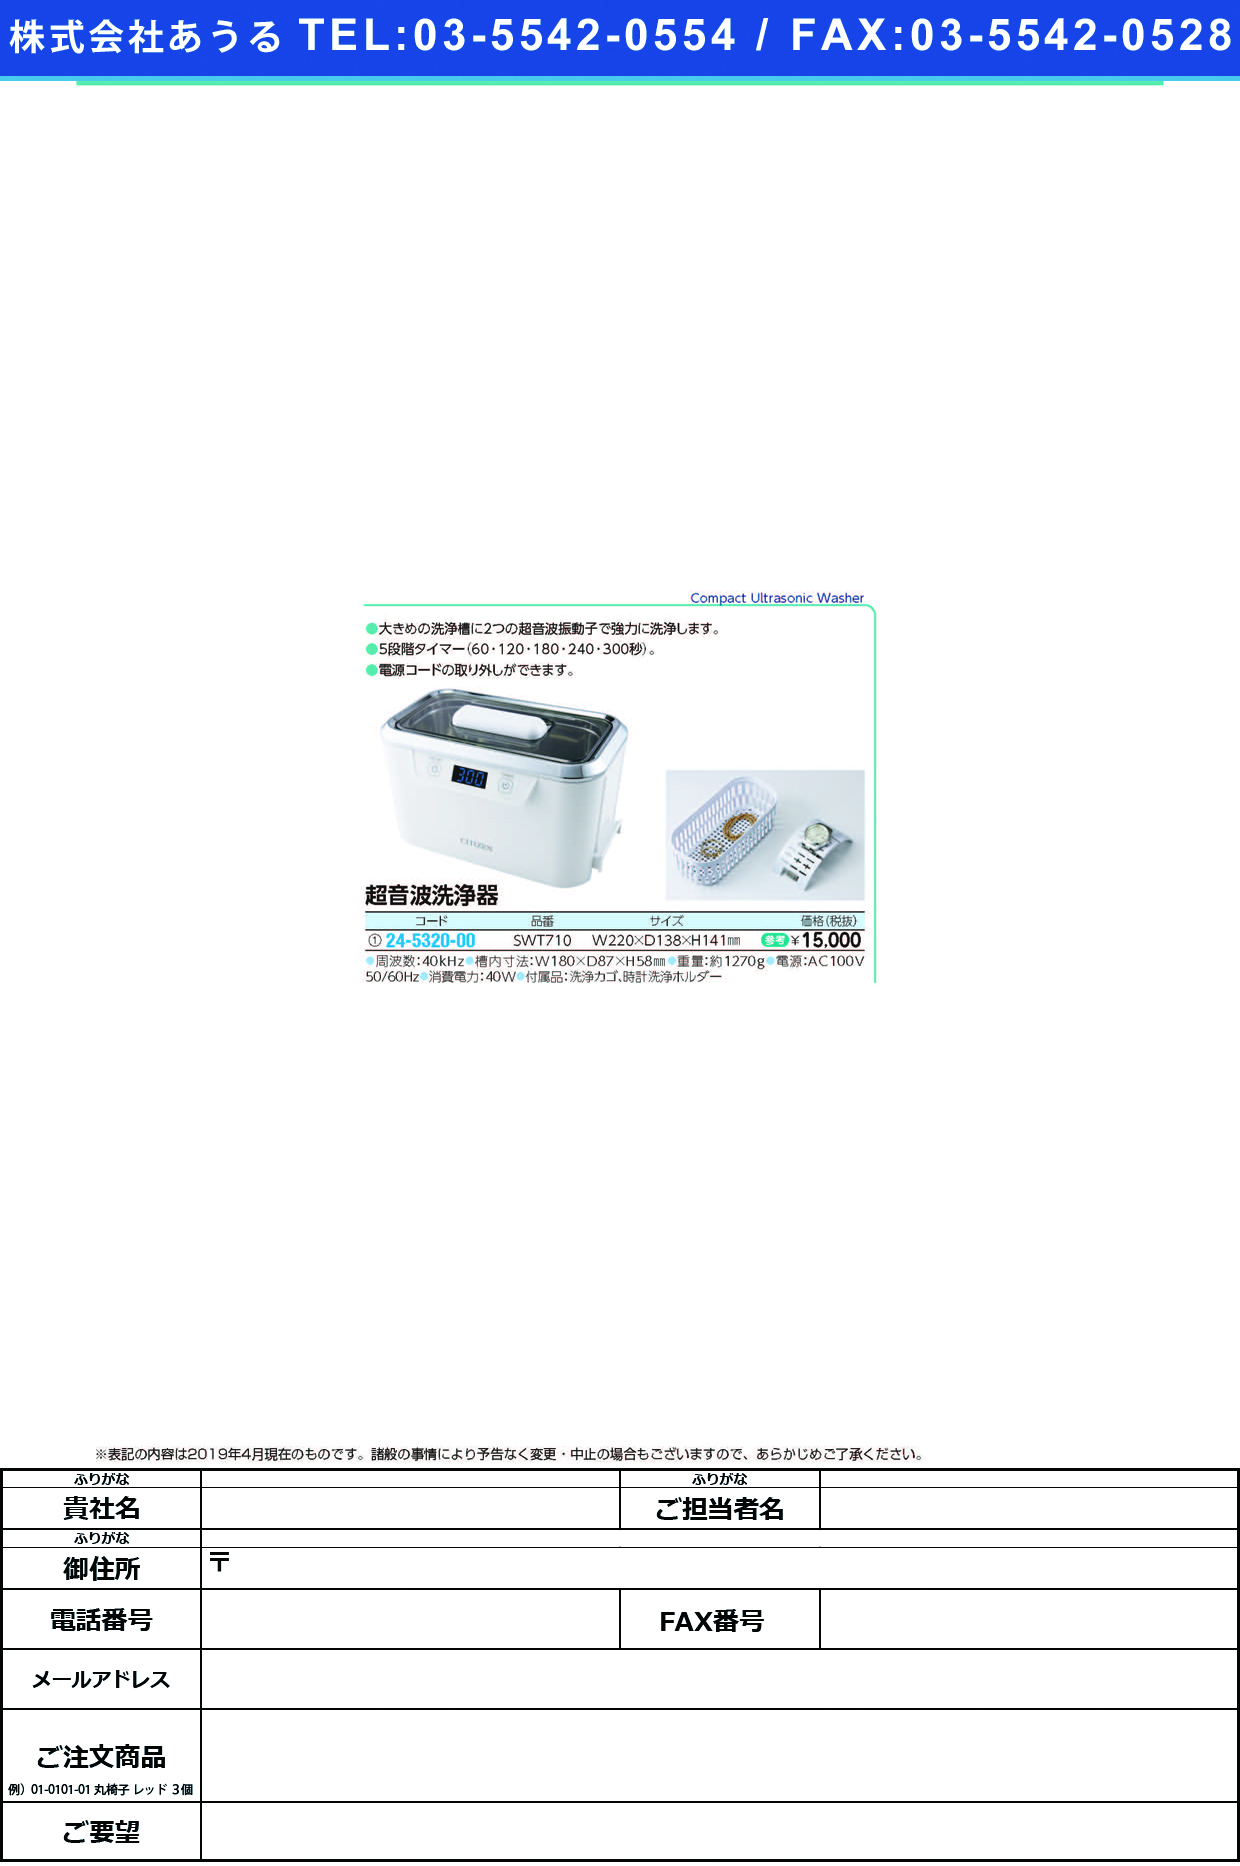 (24-5320-00)シチズン超音波洗浄器 SWT710 ｼﾁｽﾞﾝﾁｮｳｵﾝﾊﾟｾﾝｼﾞｮｳｷ【1台単位】【2019年カタログ商品】